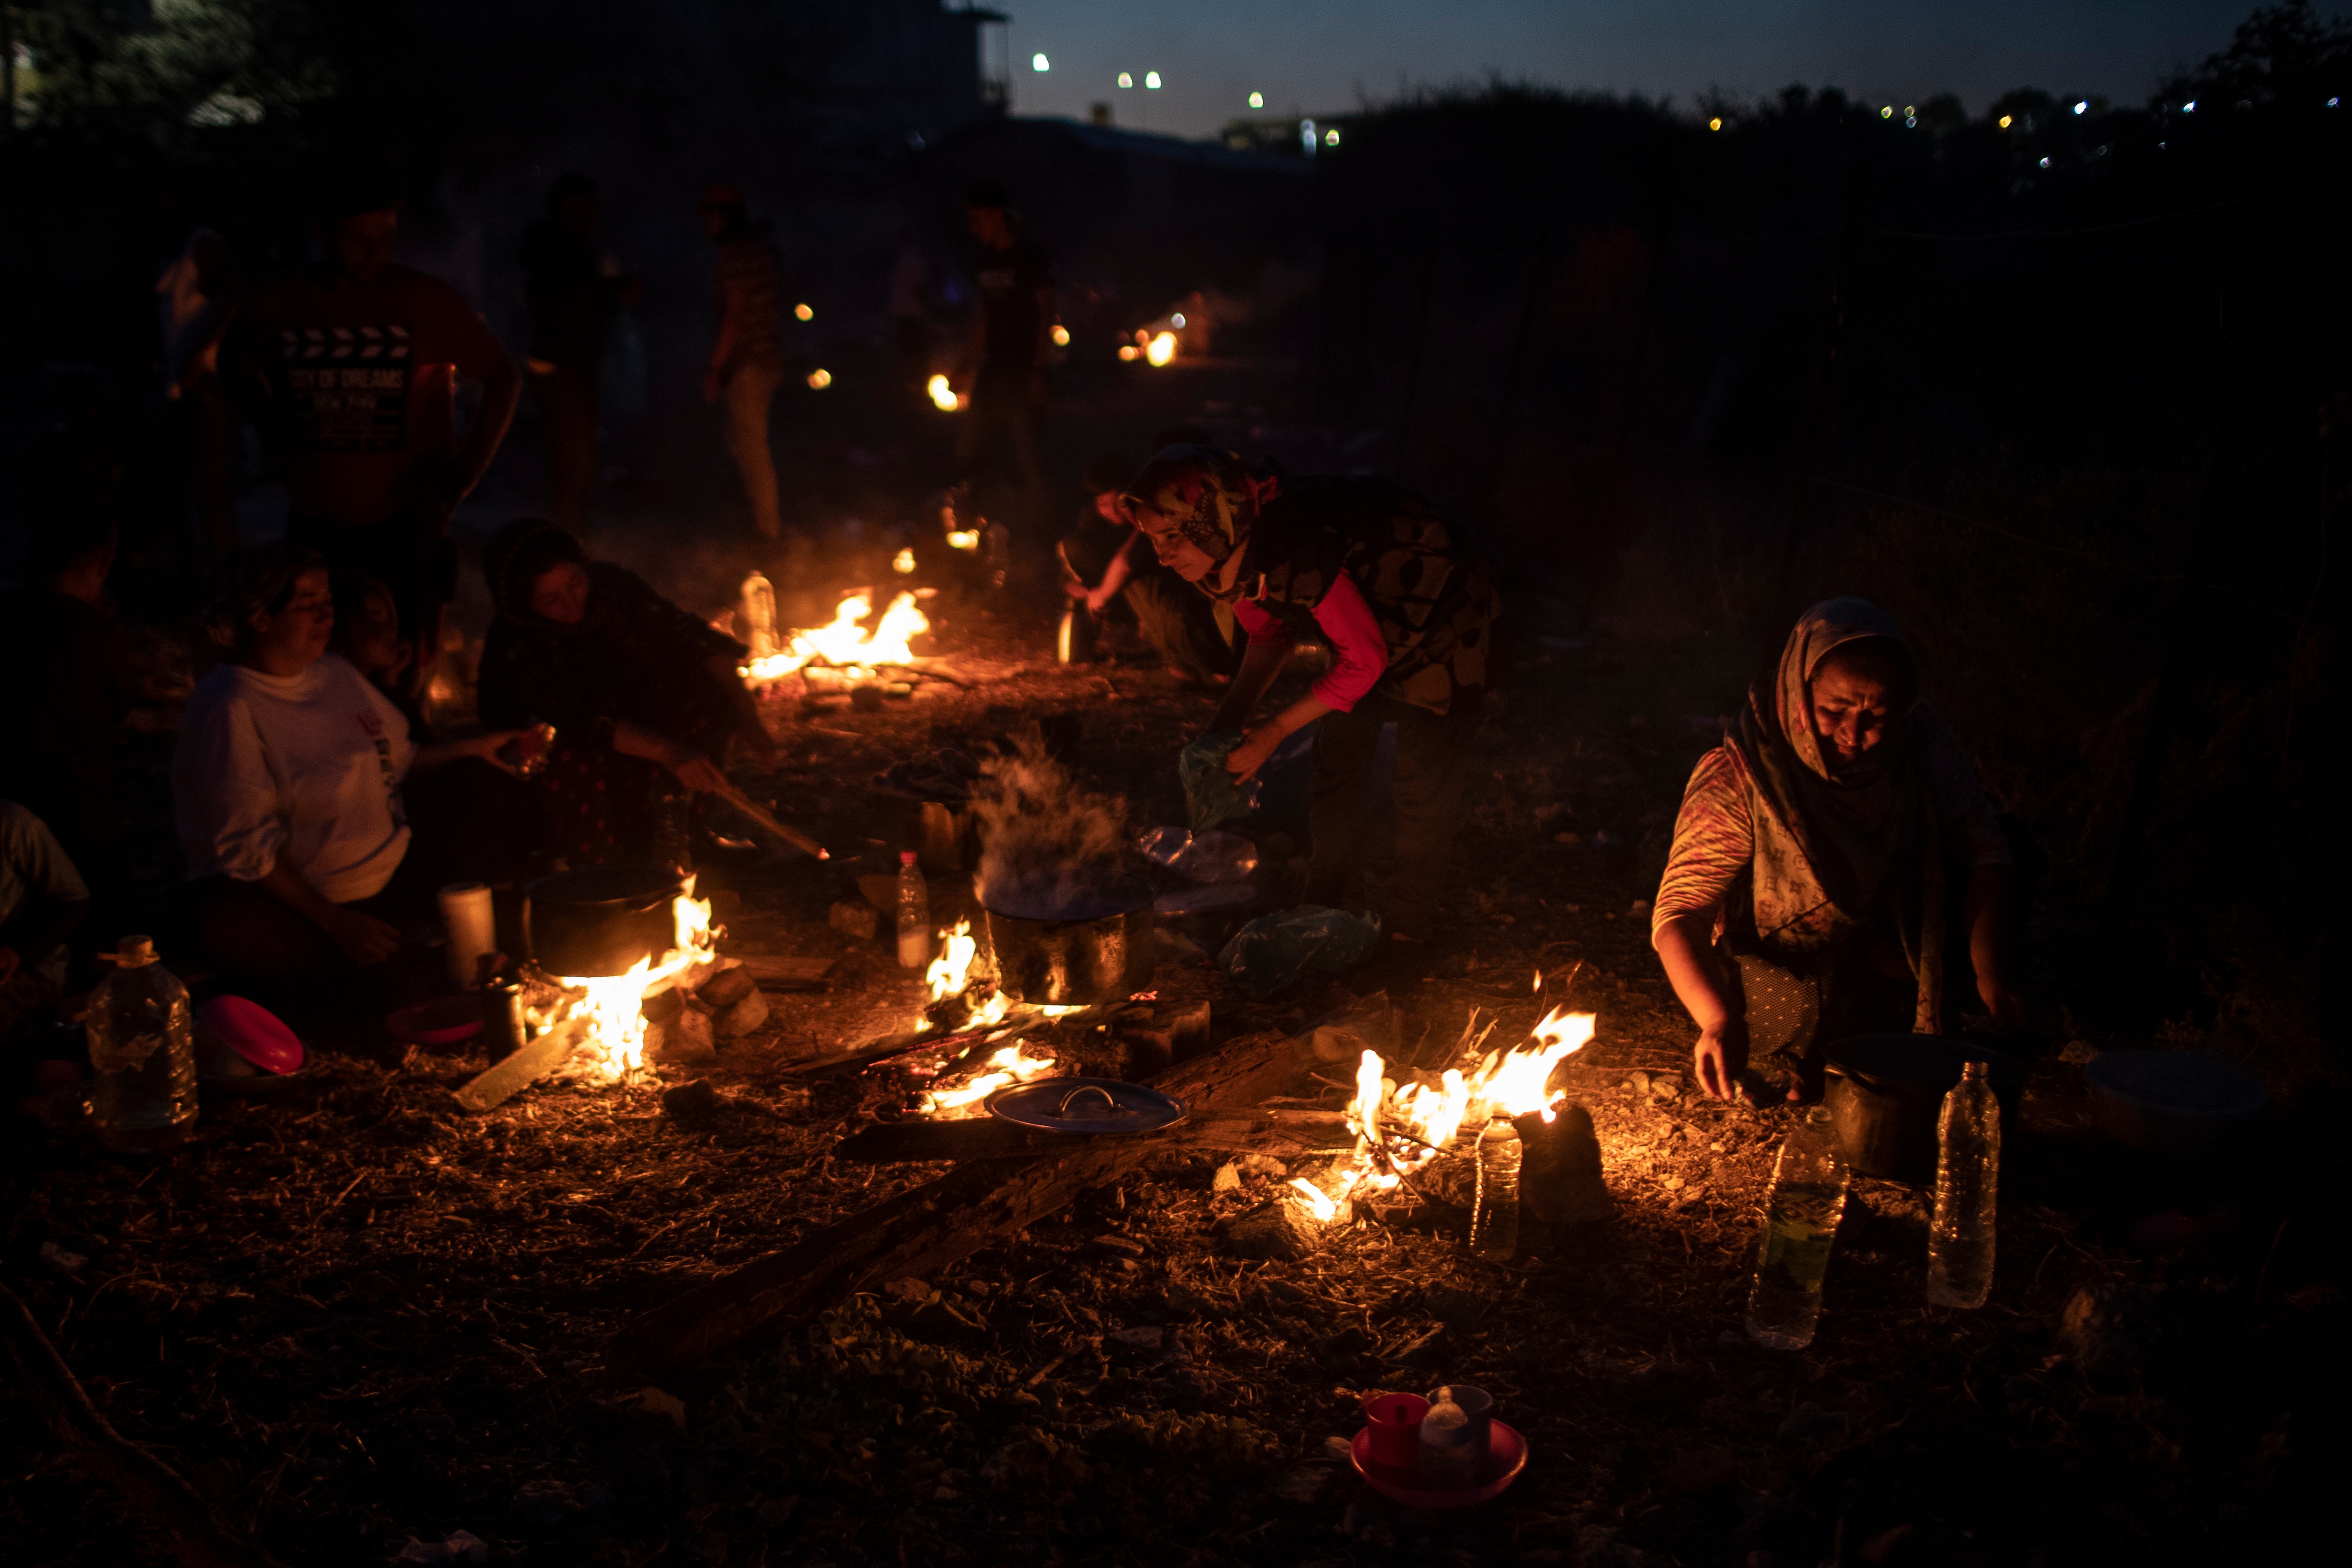 لاجئون ومهاجرون يطبخون الطعام على حرائق مؤقتة بالقرب من مصنع مهجور في جزيرة ليسبوس ، اليونان ، في 11 سبتمبر.